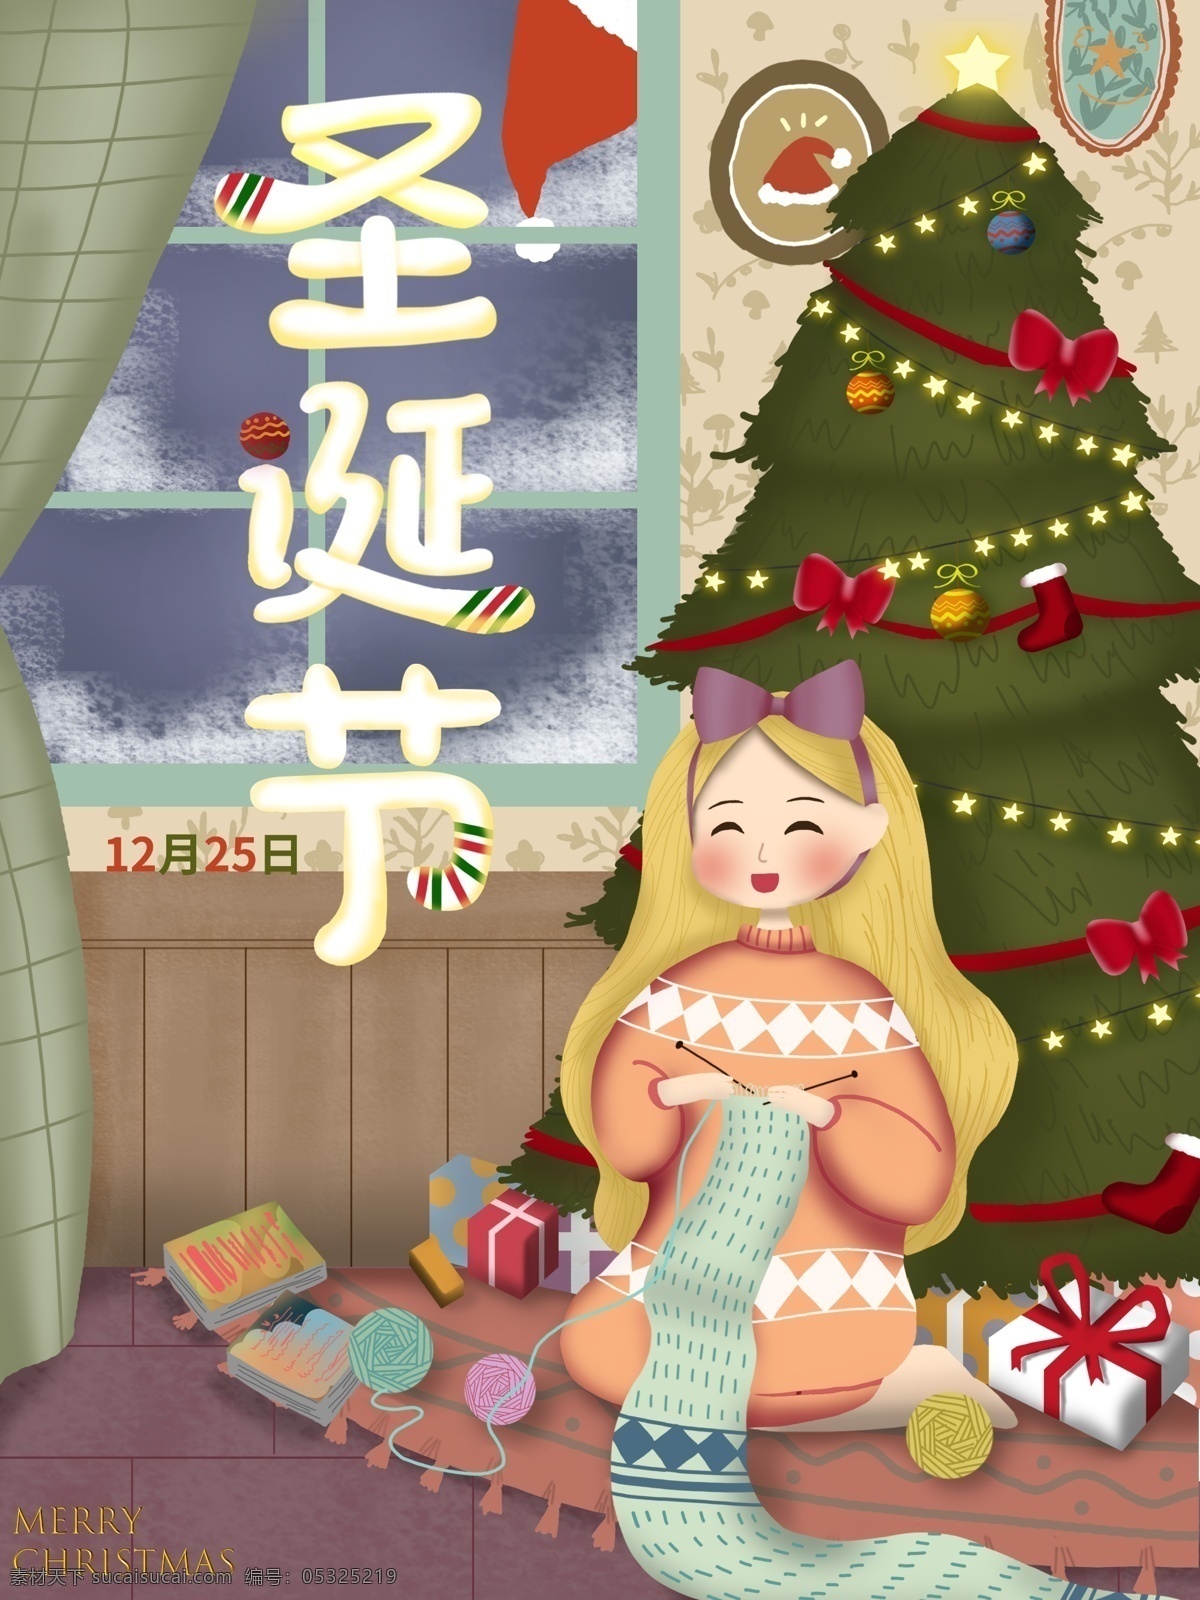 原创 手绘 插画 圣诞 节日 海报 圣诞节 星星 礼物 房子 介绍 圣诞树 圣诞球 毛线 小清新 圣诞老人